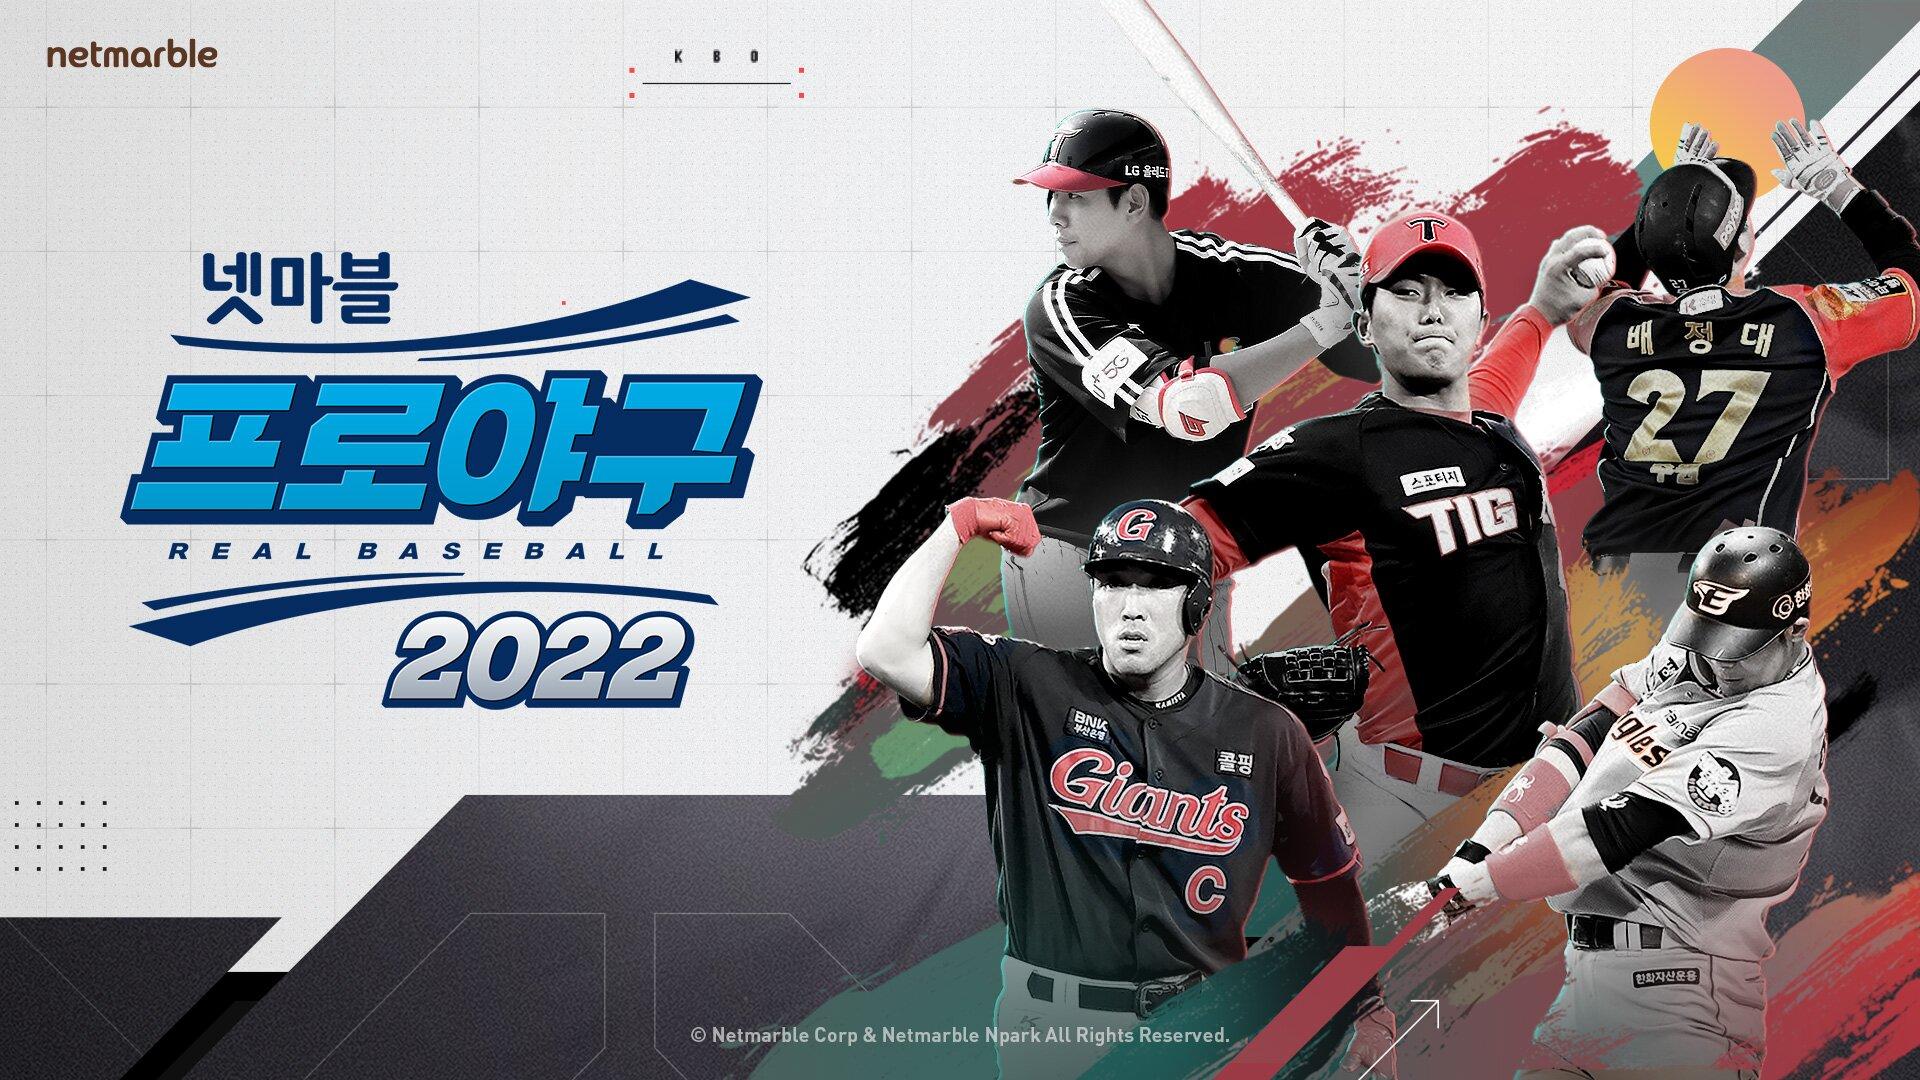 Banner of Il vero baseball 2022 